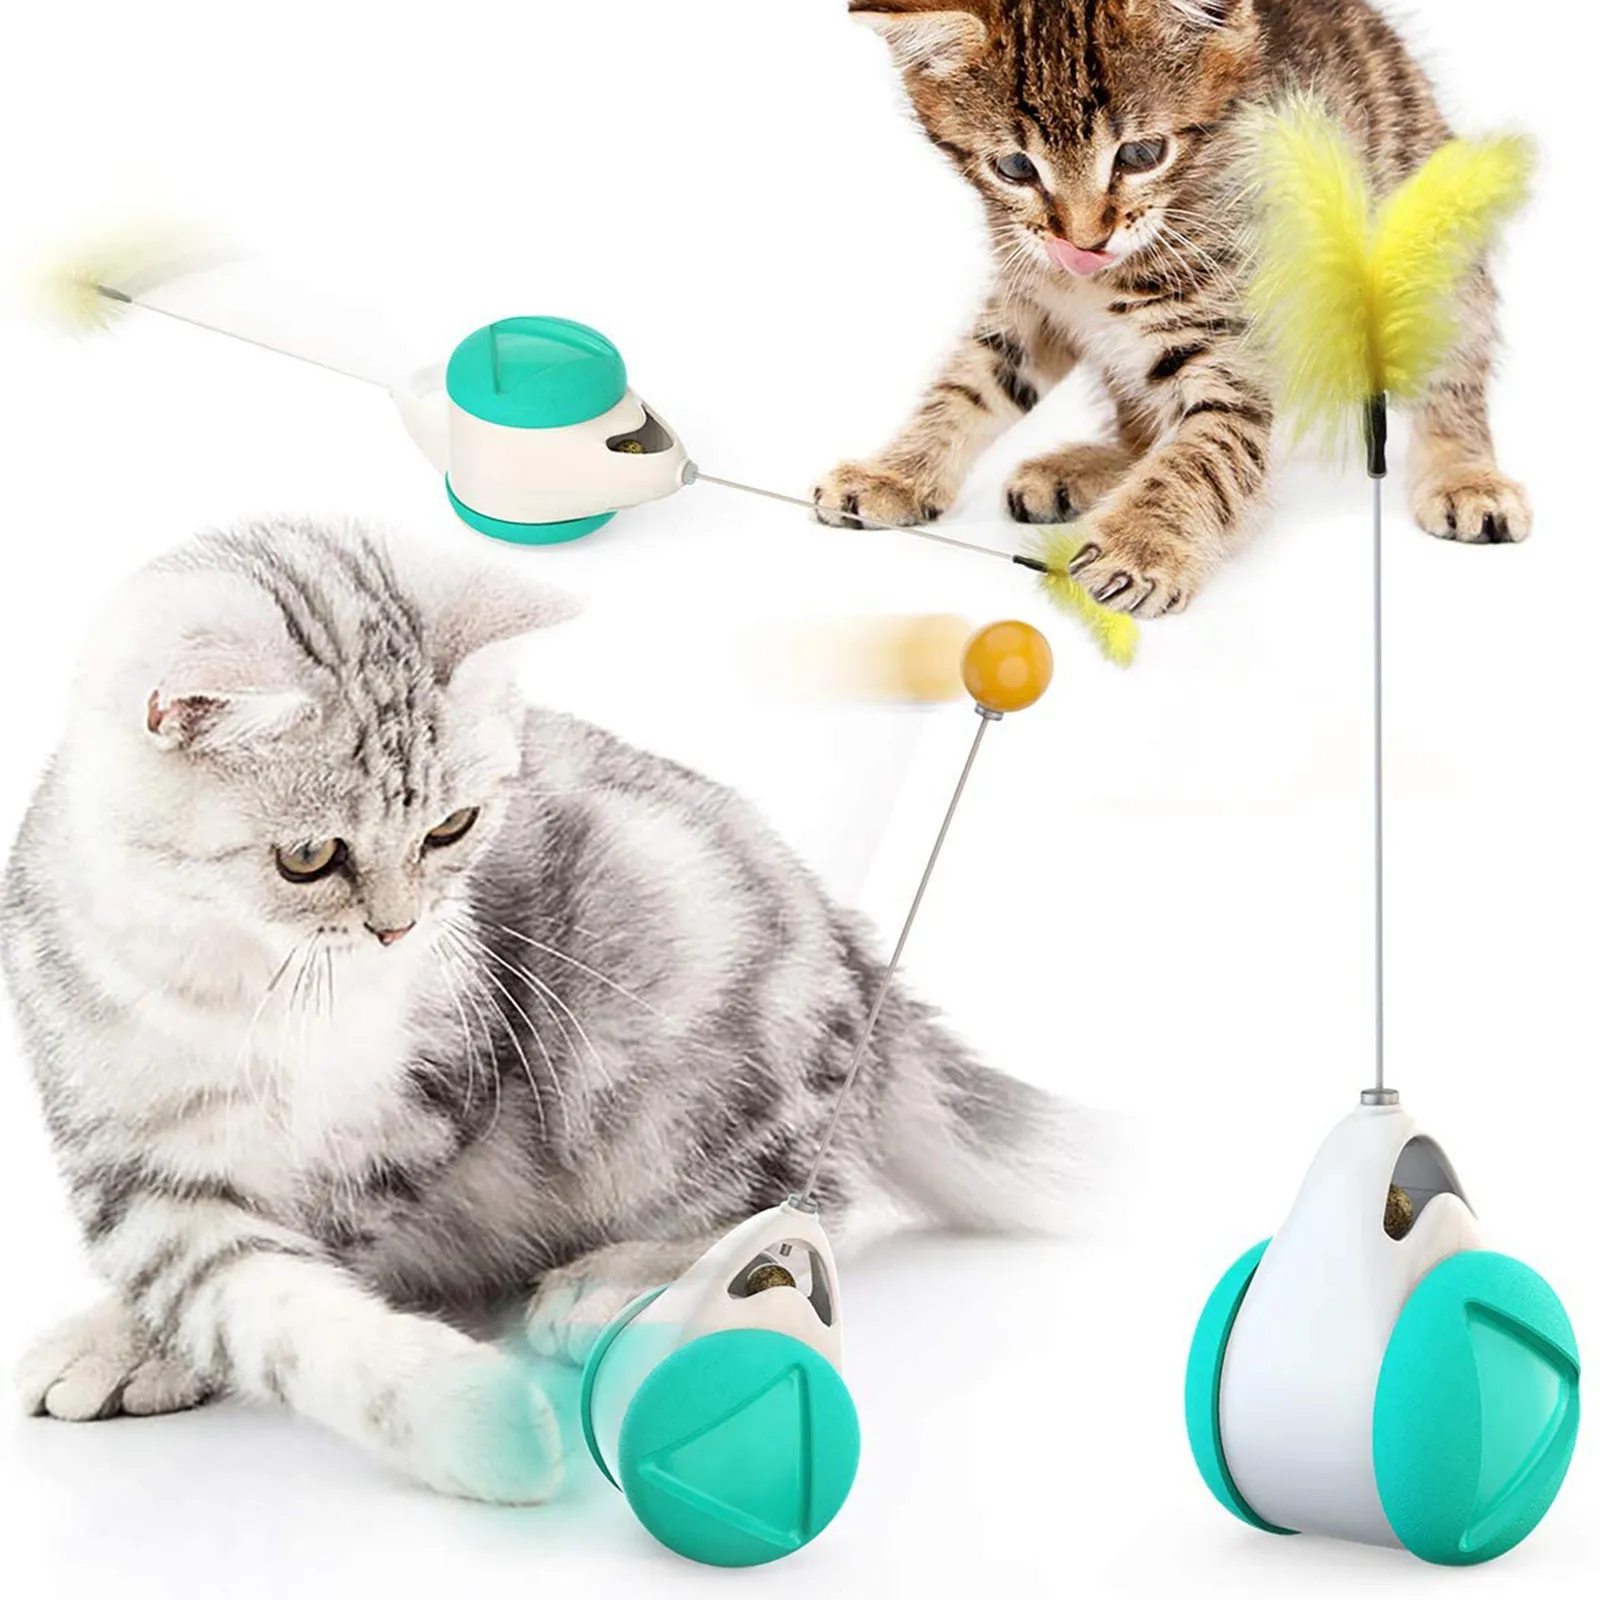 Стакан сбалансированных колеса забавная игрушка для кошек автоматический